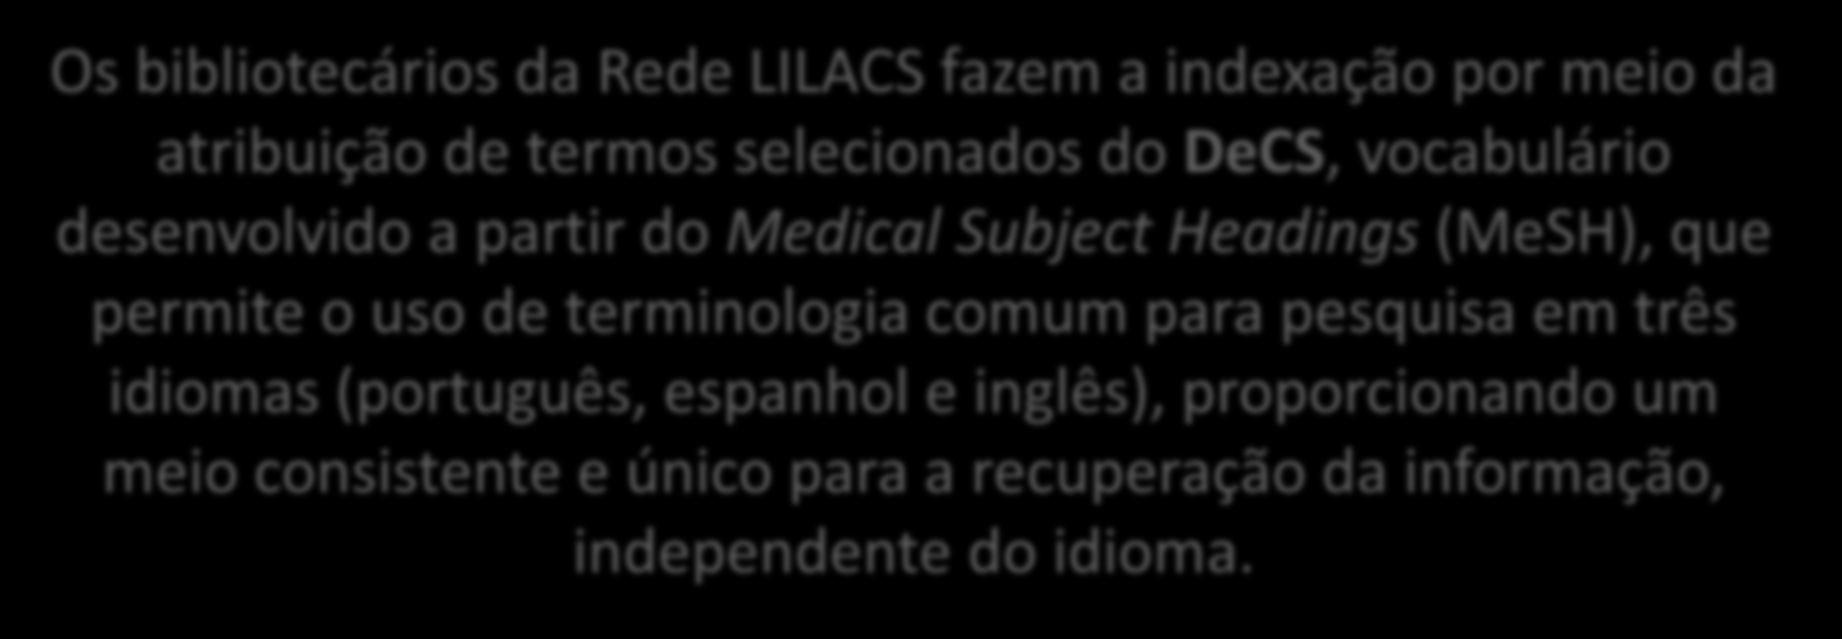 Indexando na LILACS Os bibliotecários da Rede LILACS fazem a indexação por meio da atribuição de termos selecionados do DeCS, vocabulário desenvolvido a partir do Medical Subject Headings (MeSH),